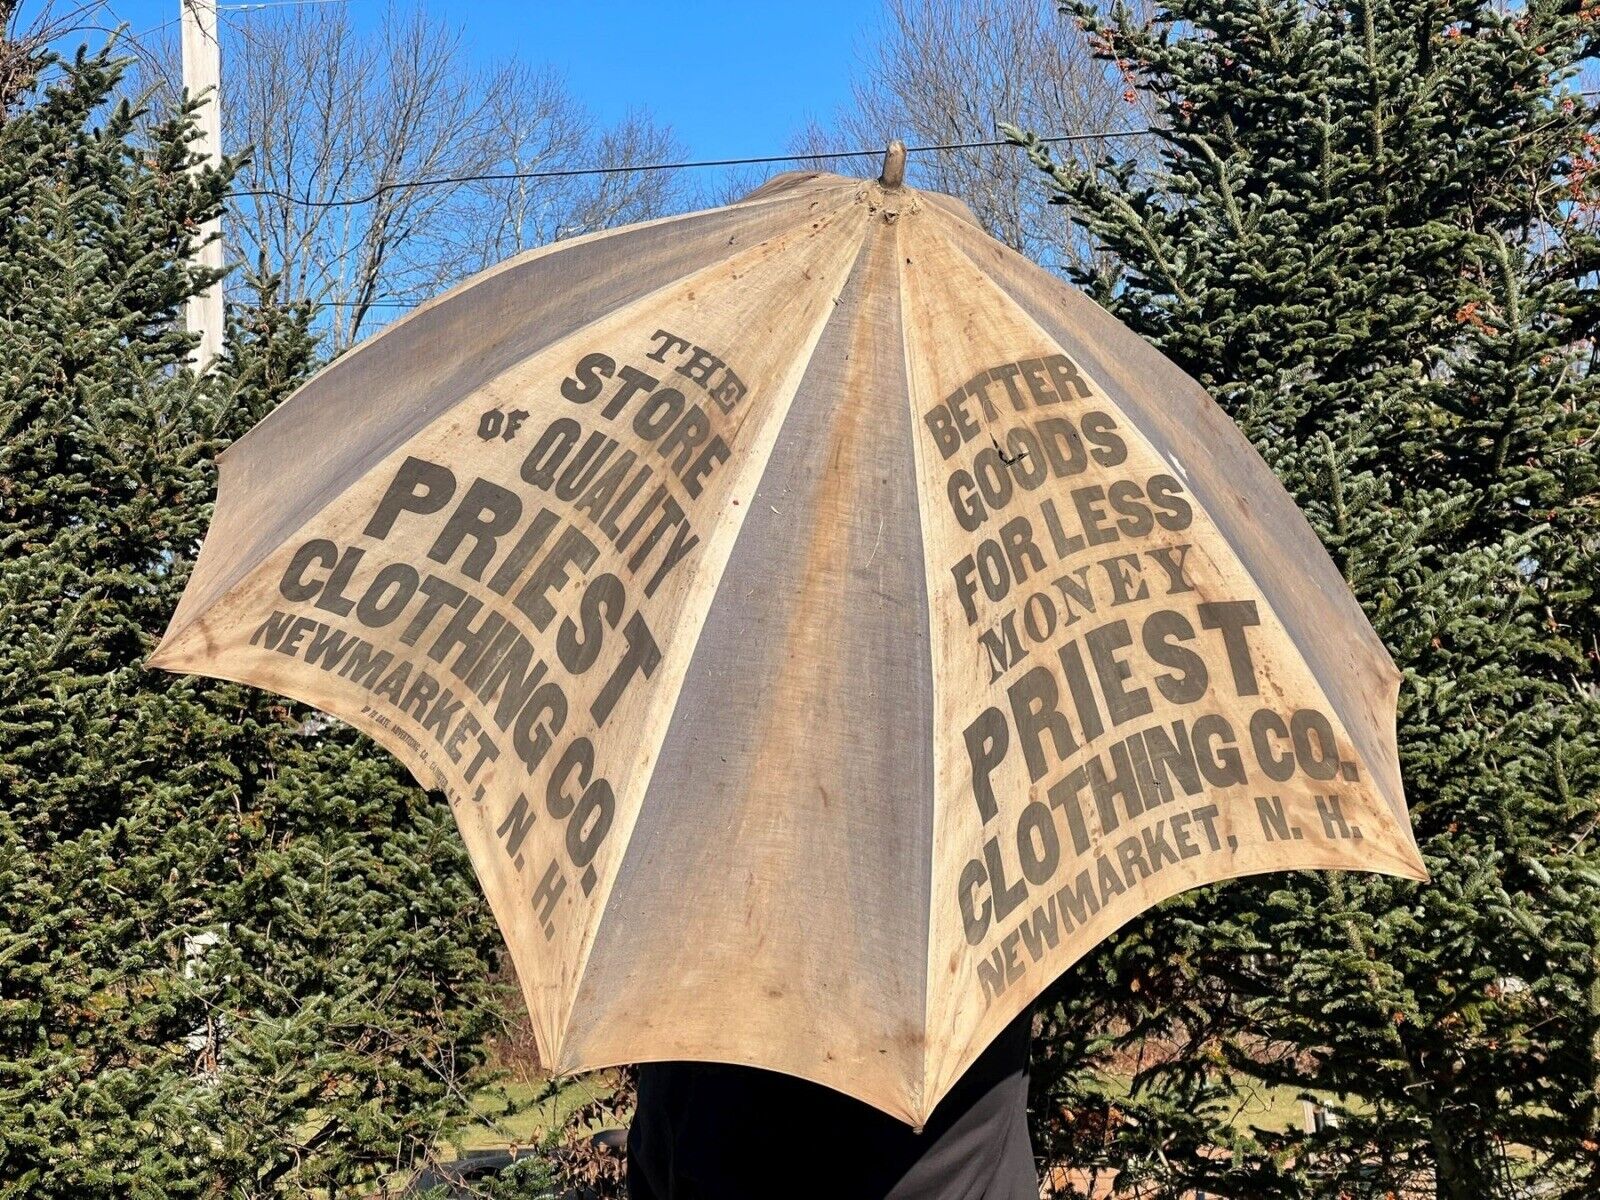 Antique 1900s Advertising Umbrella - Priest Clothing, New Hampshire